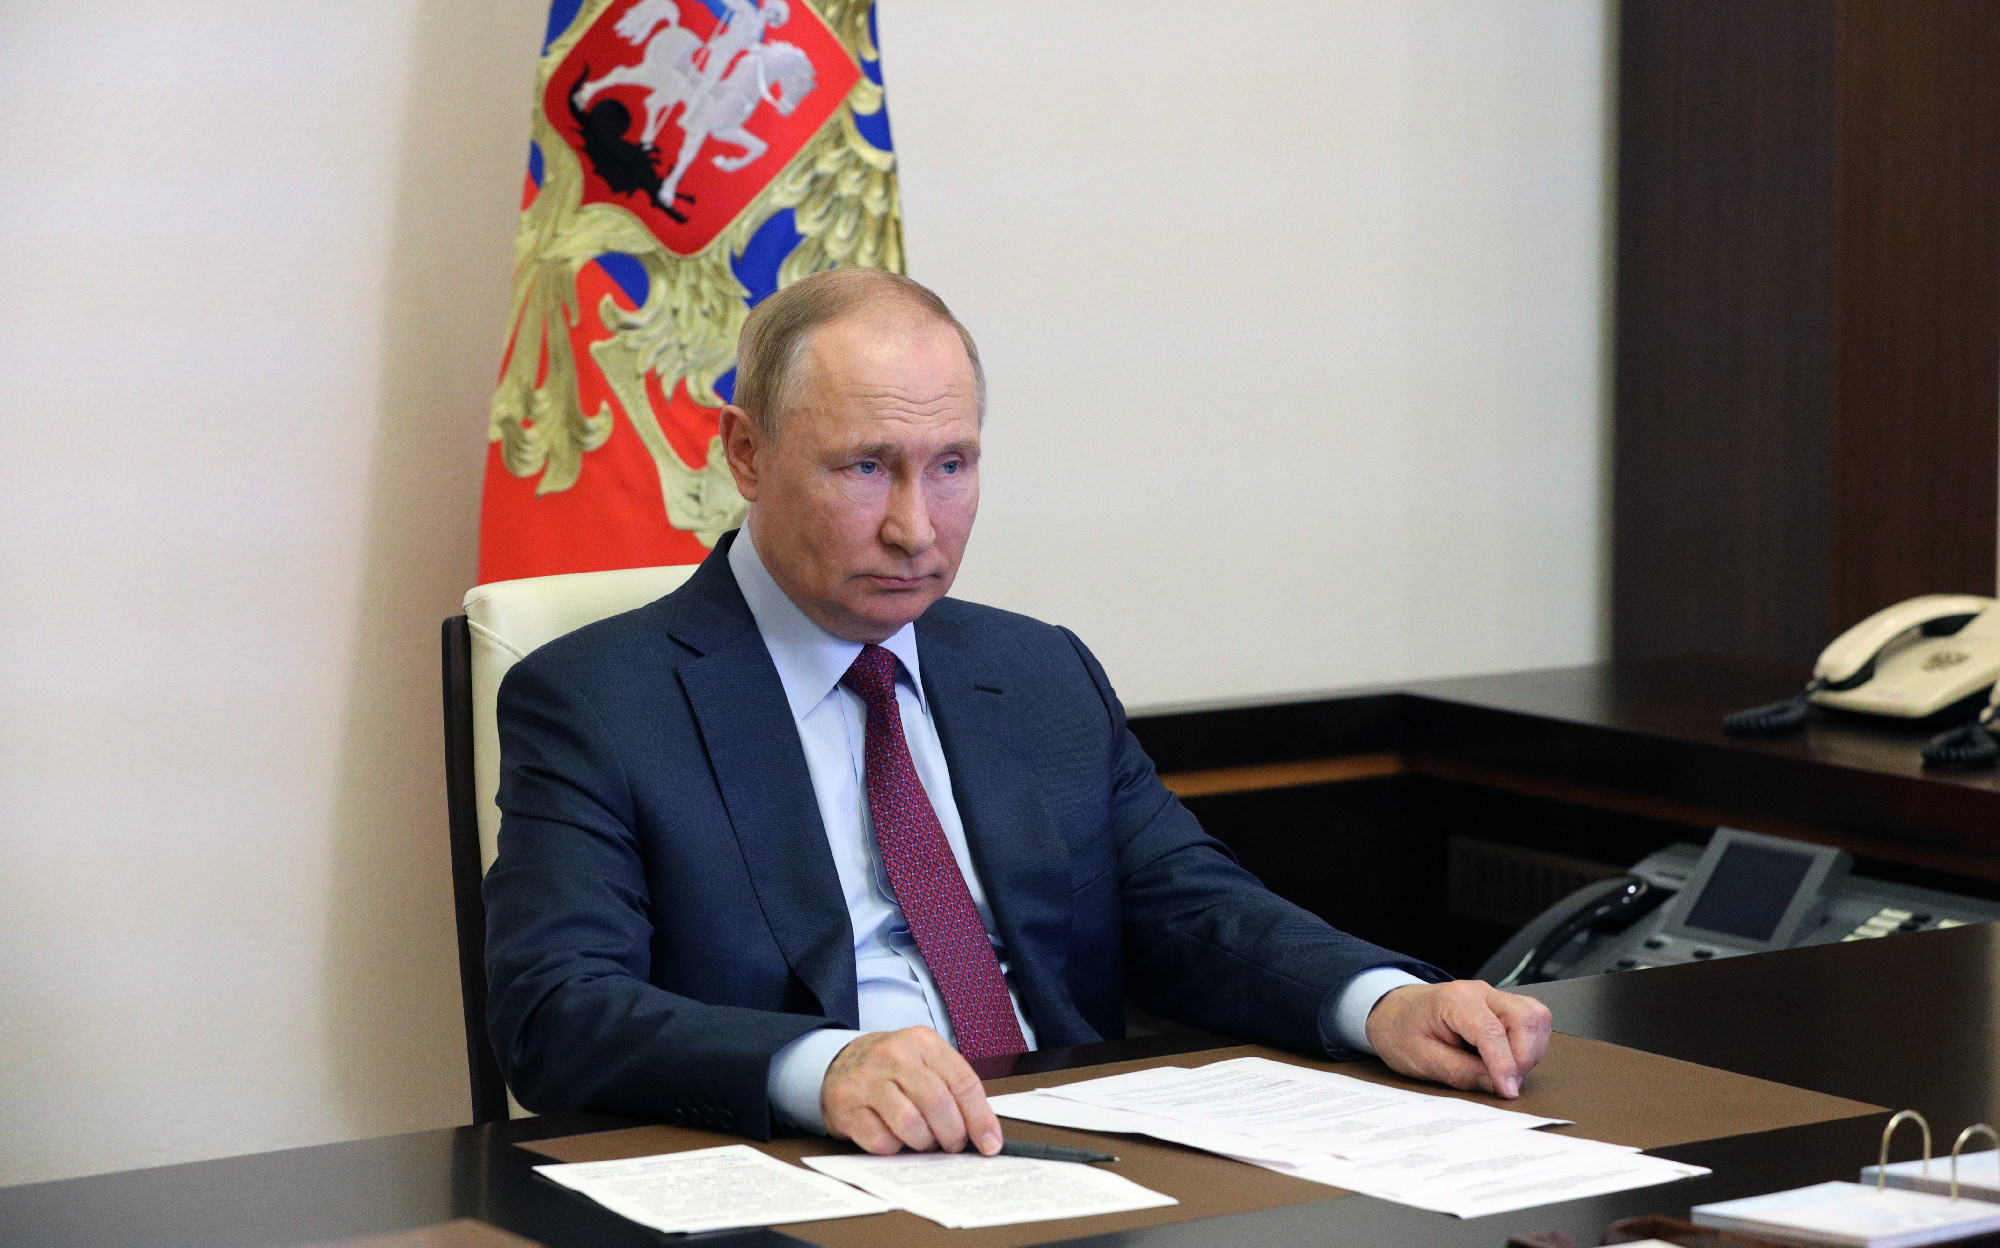 Putyin: a Nyugat ágyútölteléknek használja Ukrajnát